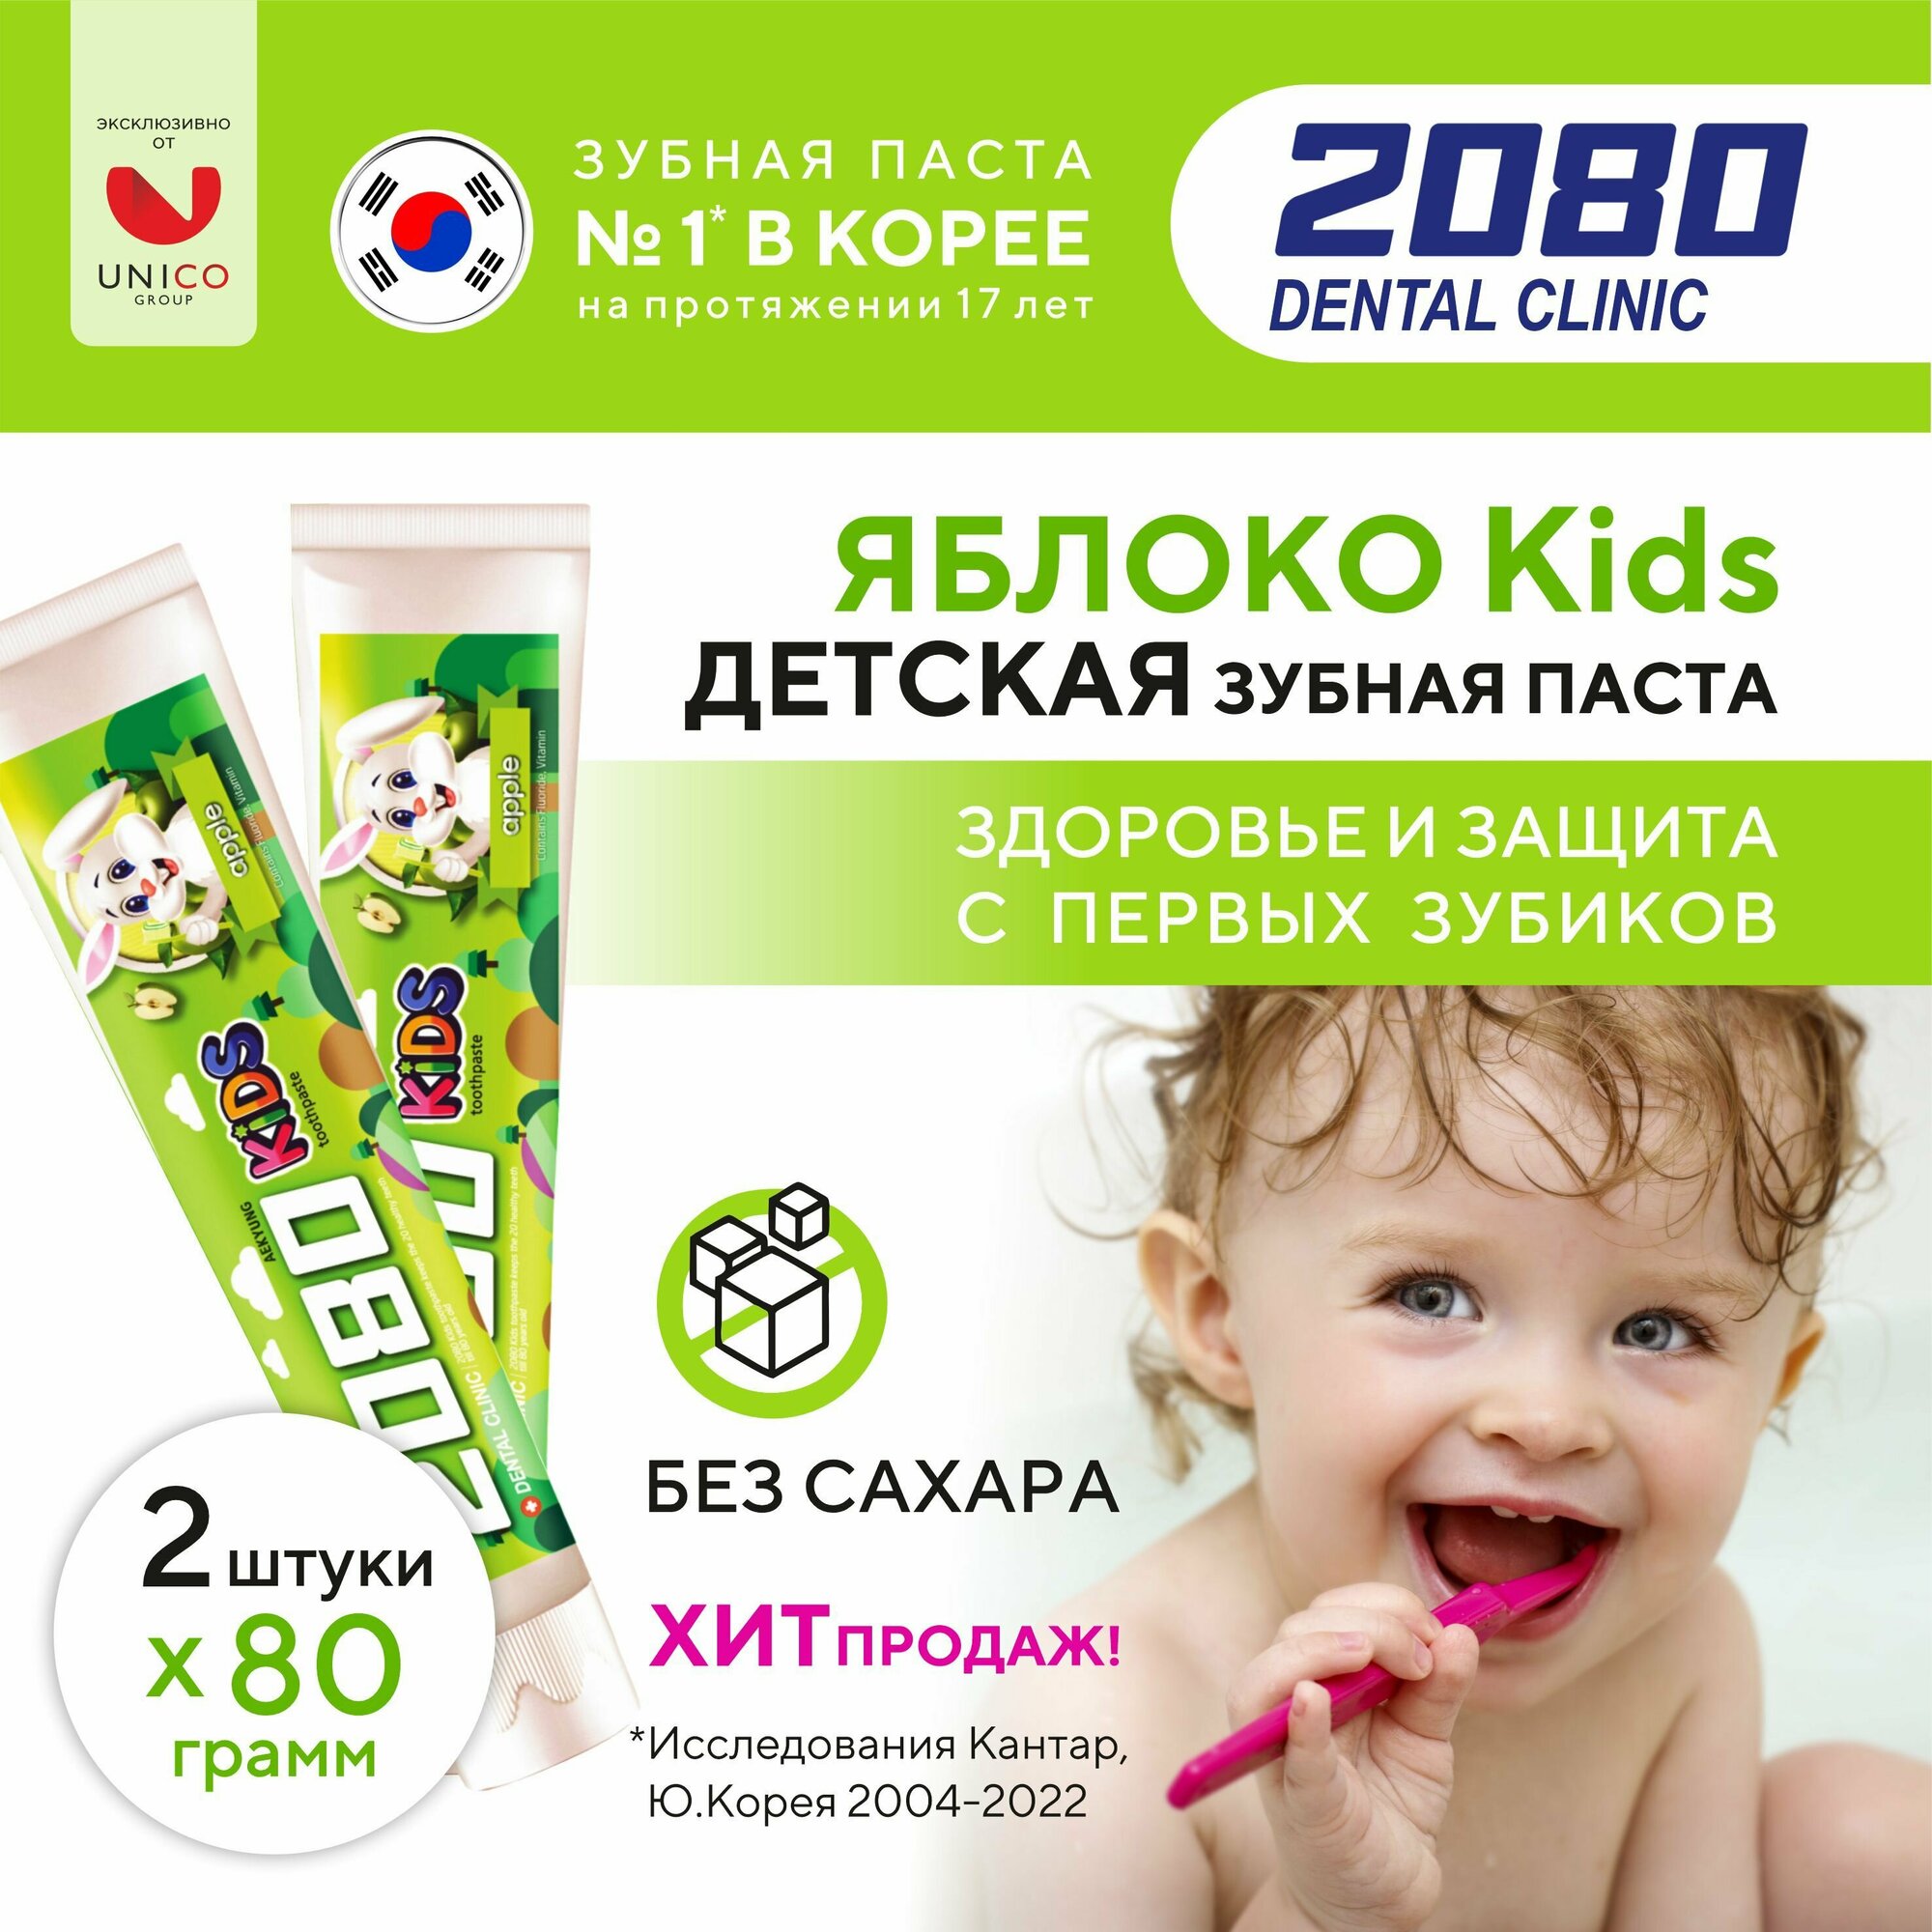 Dental Clinic 2080 Набор Зубная паста детская с ксилитом профилактика кариеса Kids Яблоко для детей, 2 шт х 80 гр